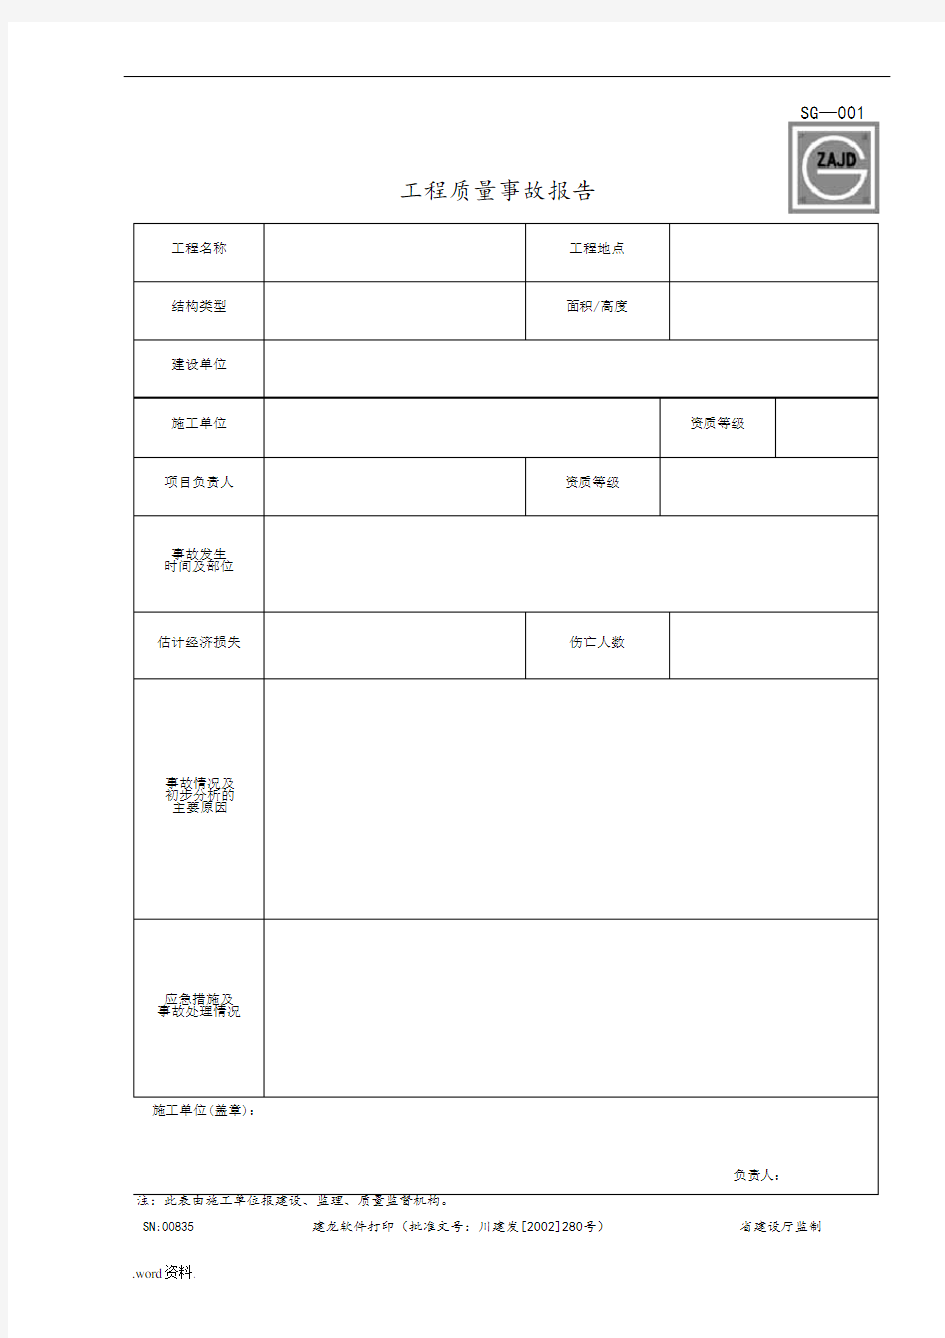 四川省建筑工程资料表格模板